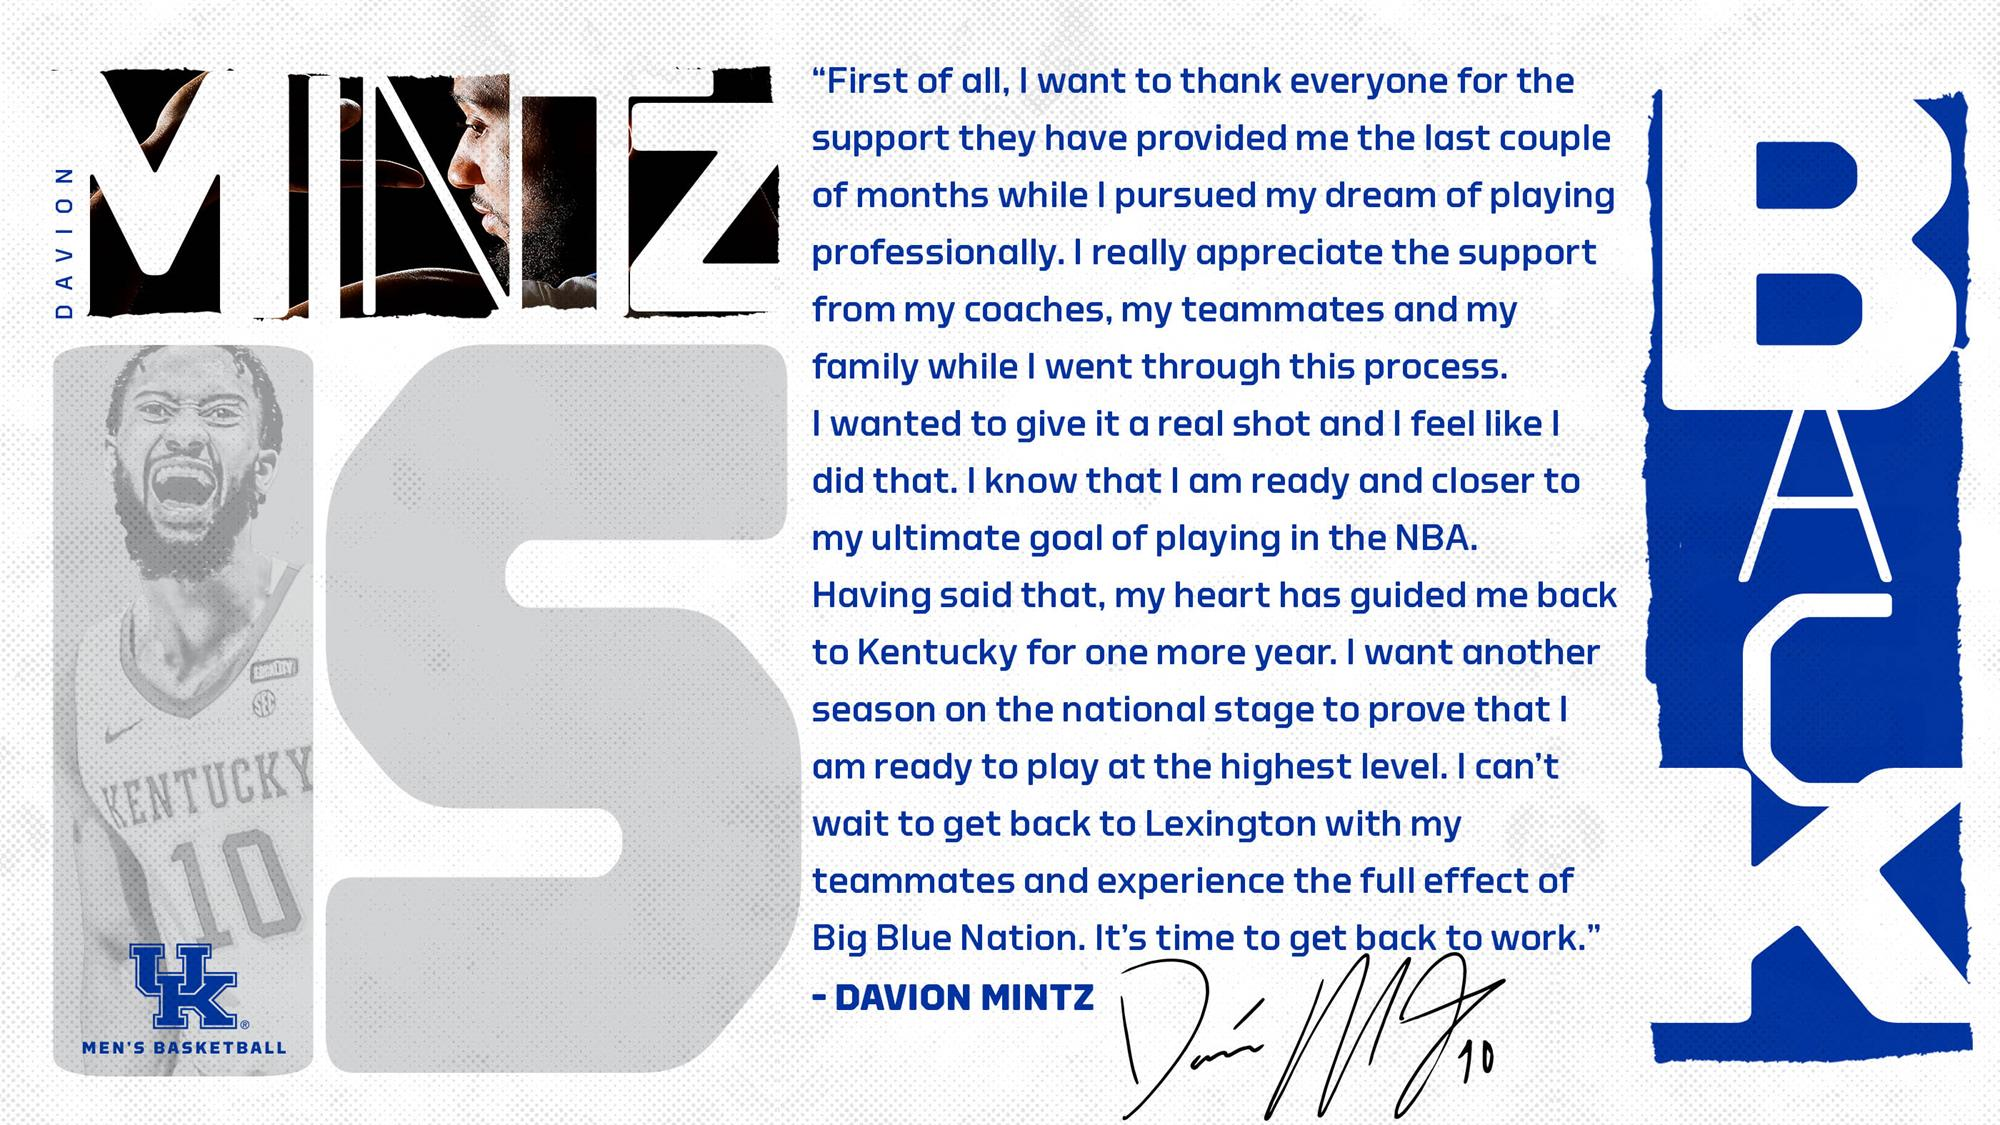 Davion Mintz to Return to Kentucky for 2021-22 Season